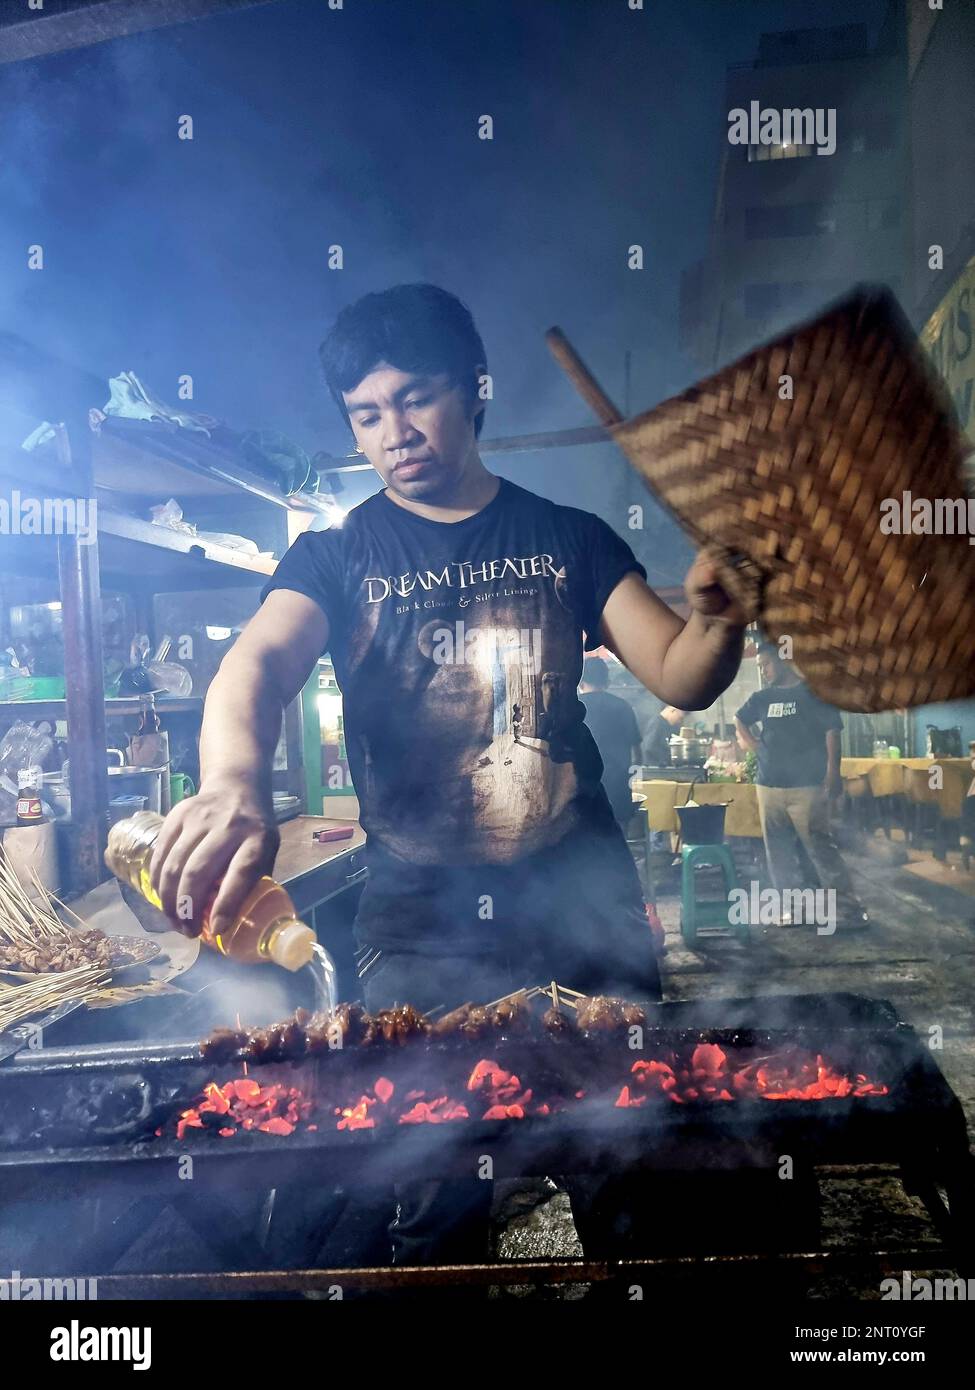 Indonesisches Street Food, von Satay bis Suppe, Nasi Goreng bis hin zu Süßigkeiten, ist äußerst beliebt und schmackhaft. Die Händler in Jakarta sind an den meisten Abenden sehr beschäftigt und servieren den wiederkehrenden Bürobesuchern und anderen, die oft packen und gehen, warmes, billiges Essen. Indonesien. Stockfoto